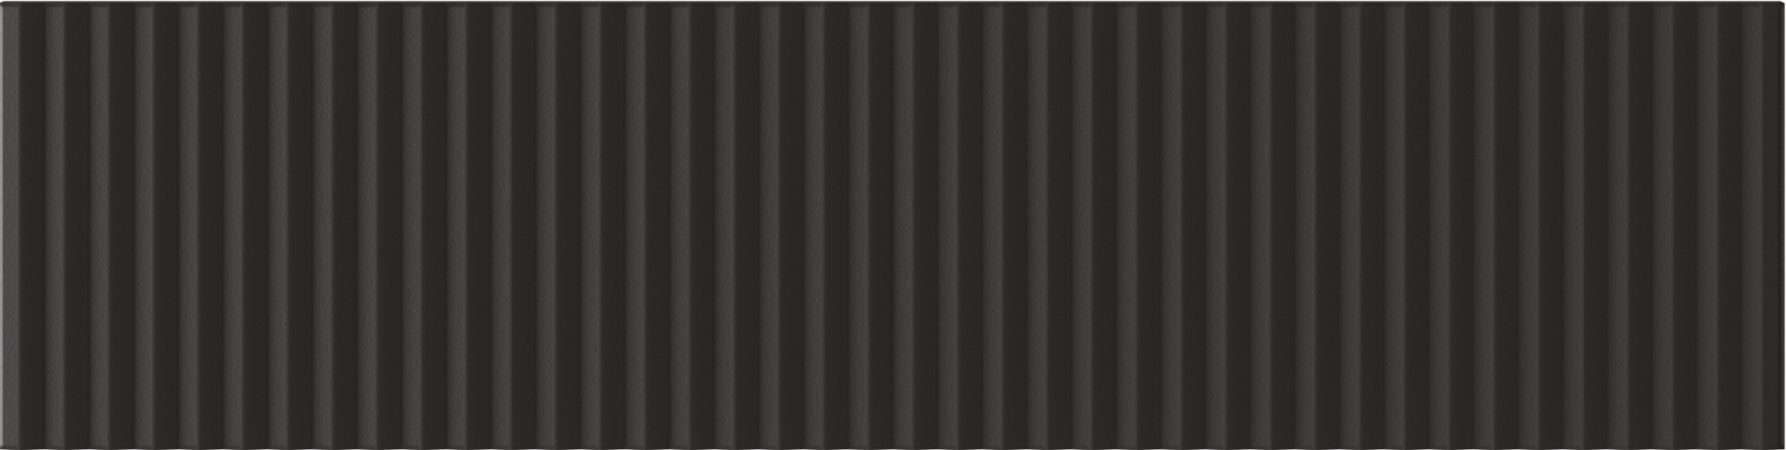 Керамическая плитка Wow Twin Peaks Low Nero 131563, цвет чёрный, поверхность матовая 3d (объёмная), под кирпич, 75x300